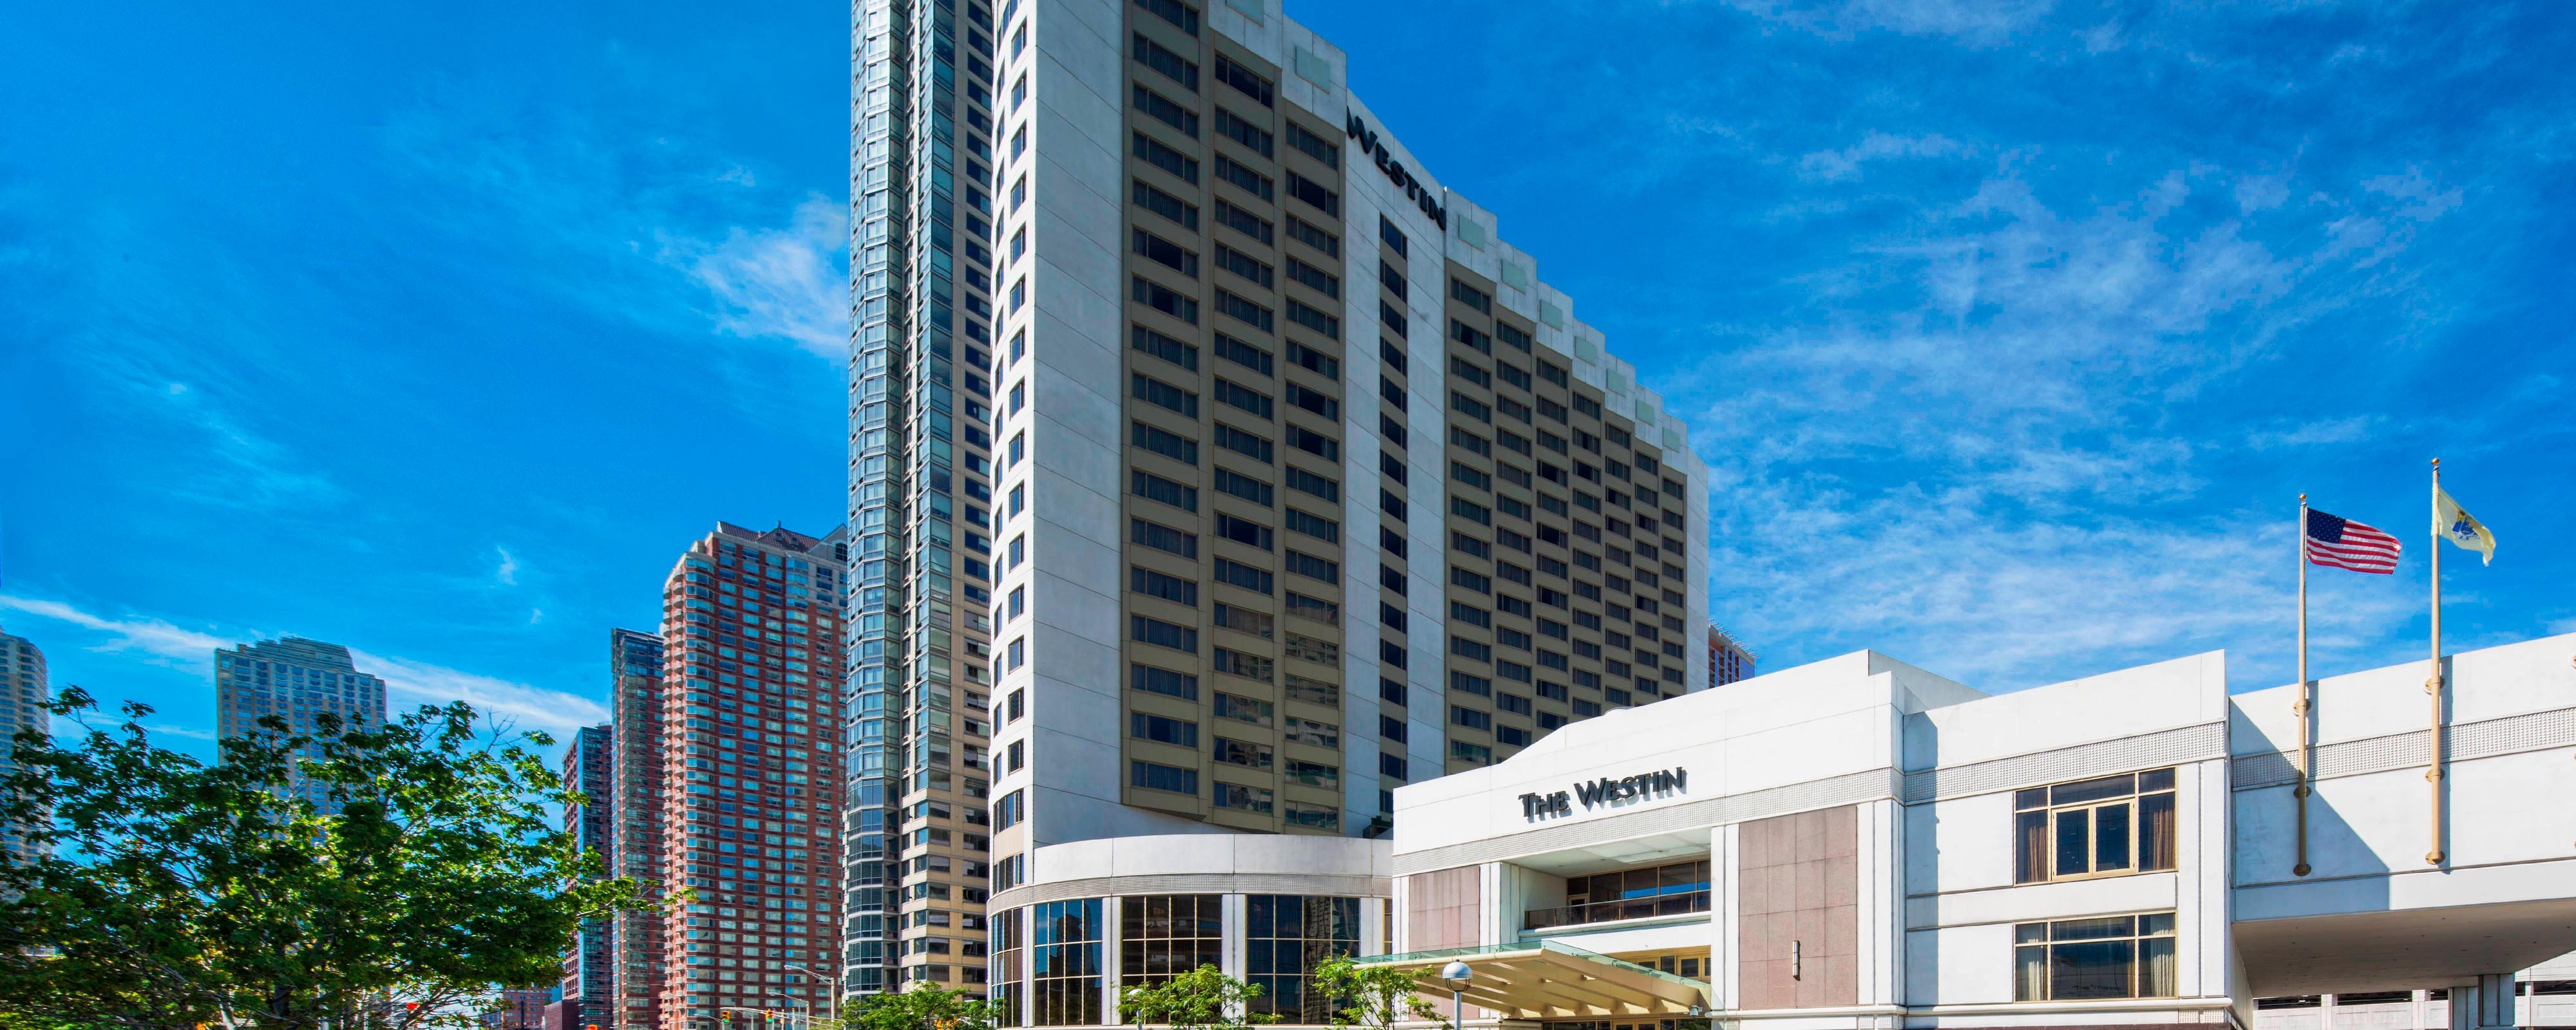 Top Hotels in Jersey City | Marriott 